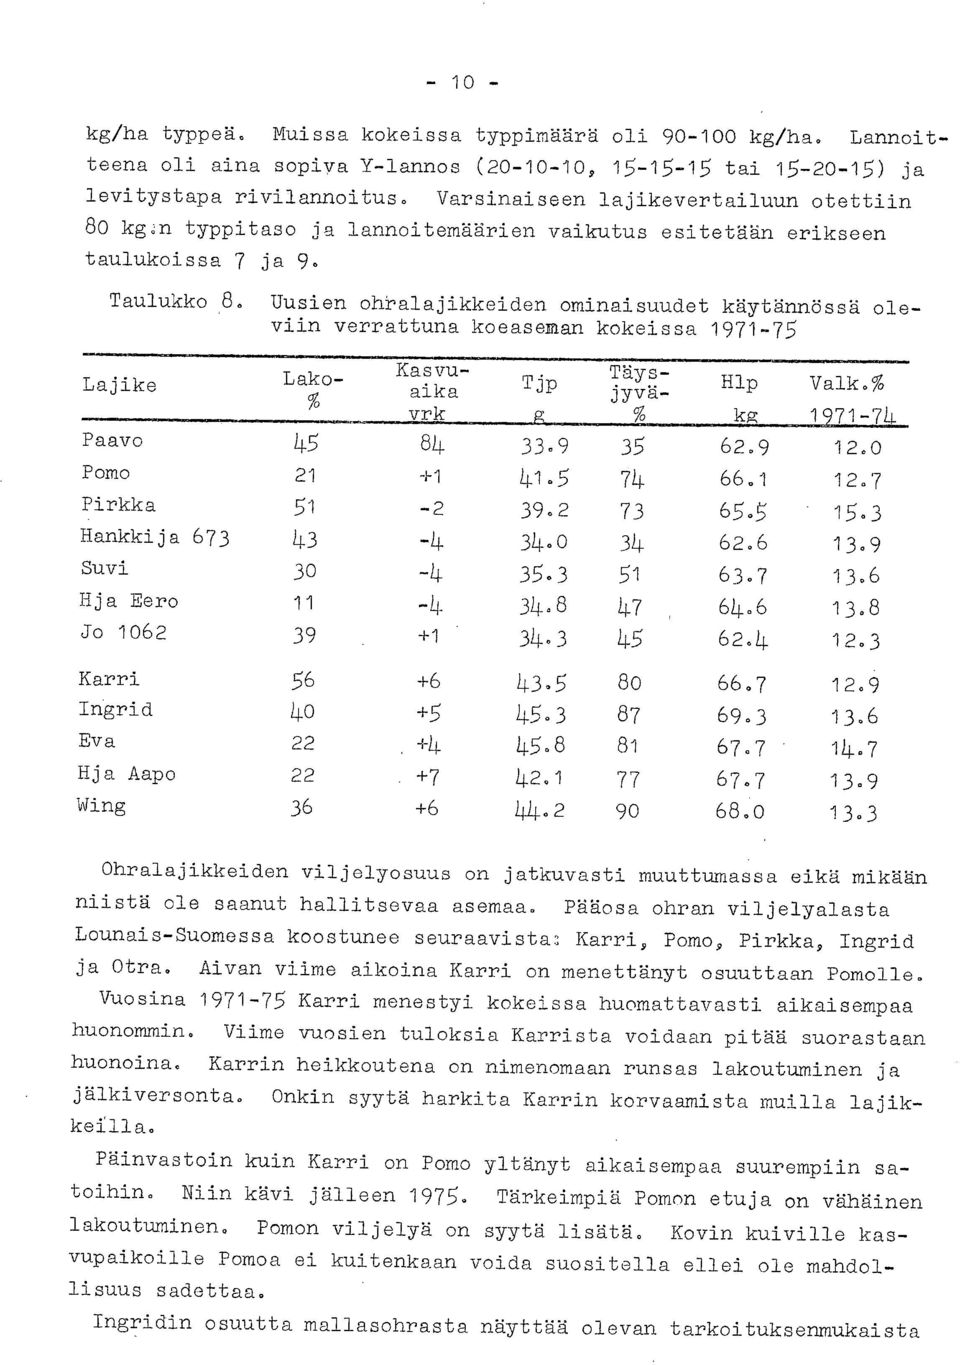 Uusien ohralajikkeiden ominaisuudet käytännössä oleviin verrattuna koeaseman kokeissa 1971-75 Lajike Lako- Kasvuaika Tjp Täysjyvä- Hlp Valk.% vrk kg 1 71-74 Paavo 45 84 33.9 35 62.9 12.